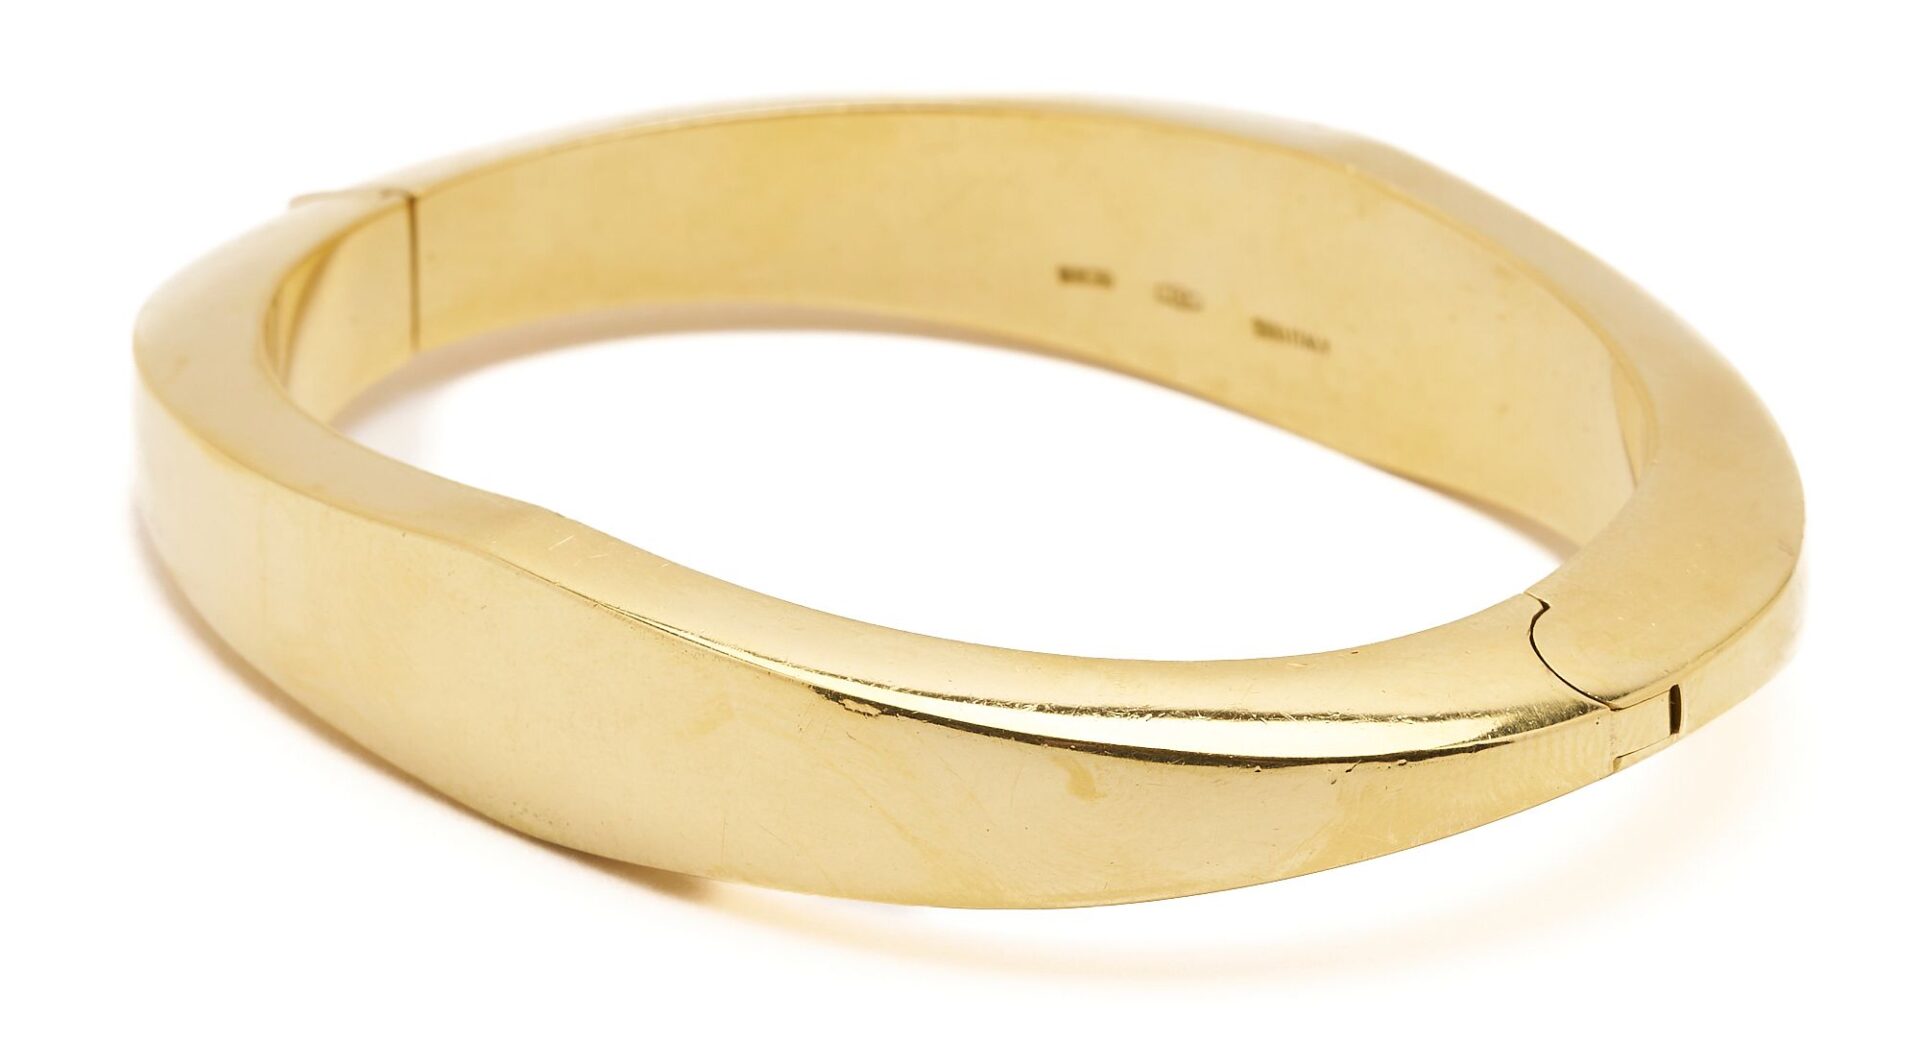 Lot 44: 18K Gold Italian Designer Bangle Bracelet